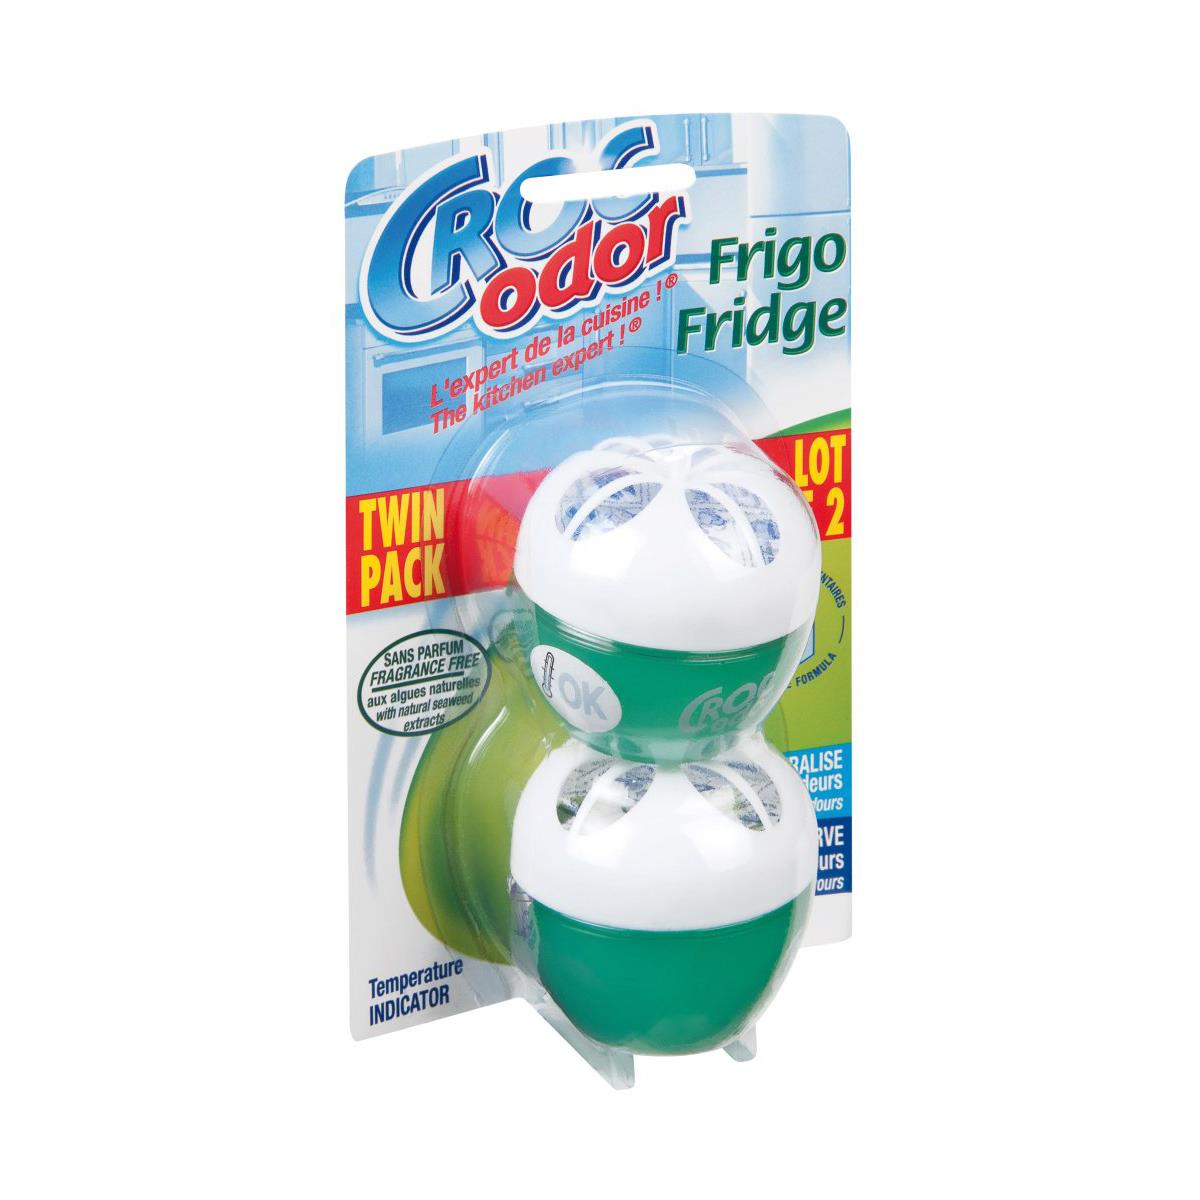 Croc Odor Fridge Fresh Odour Neutraliser 2 Pack 33g